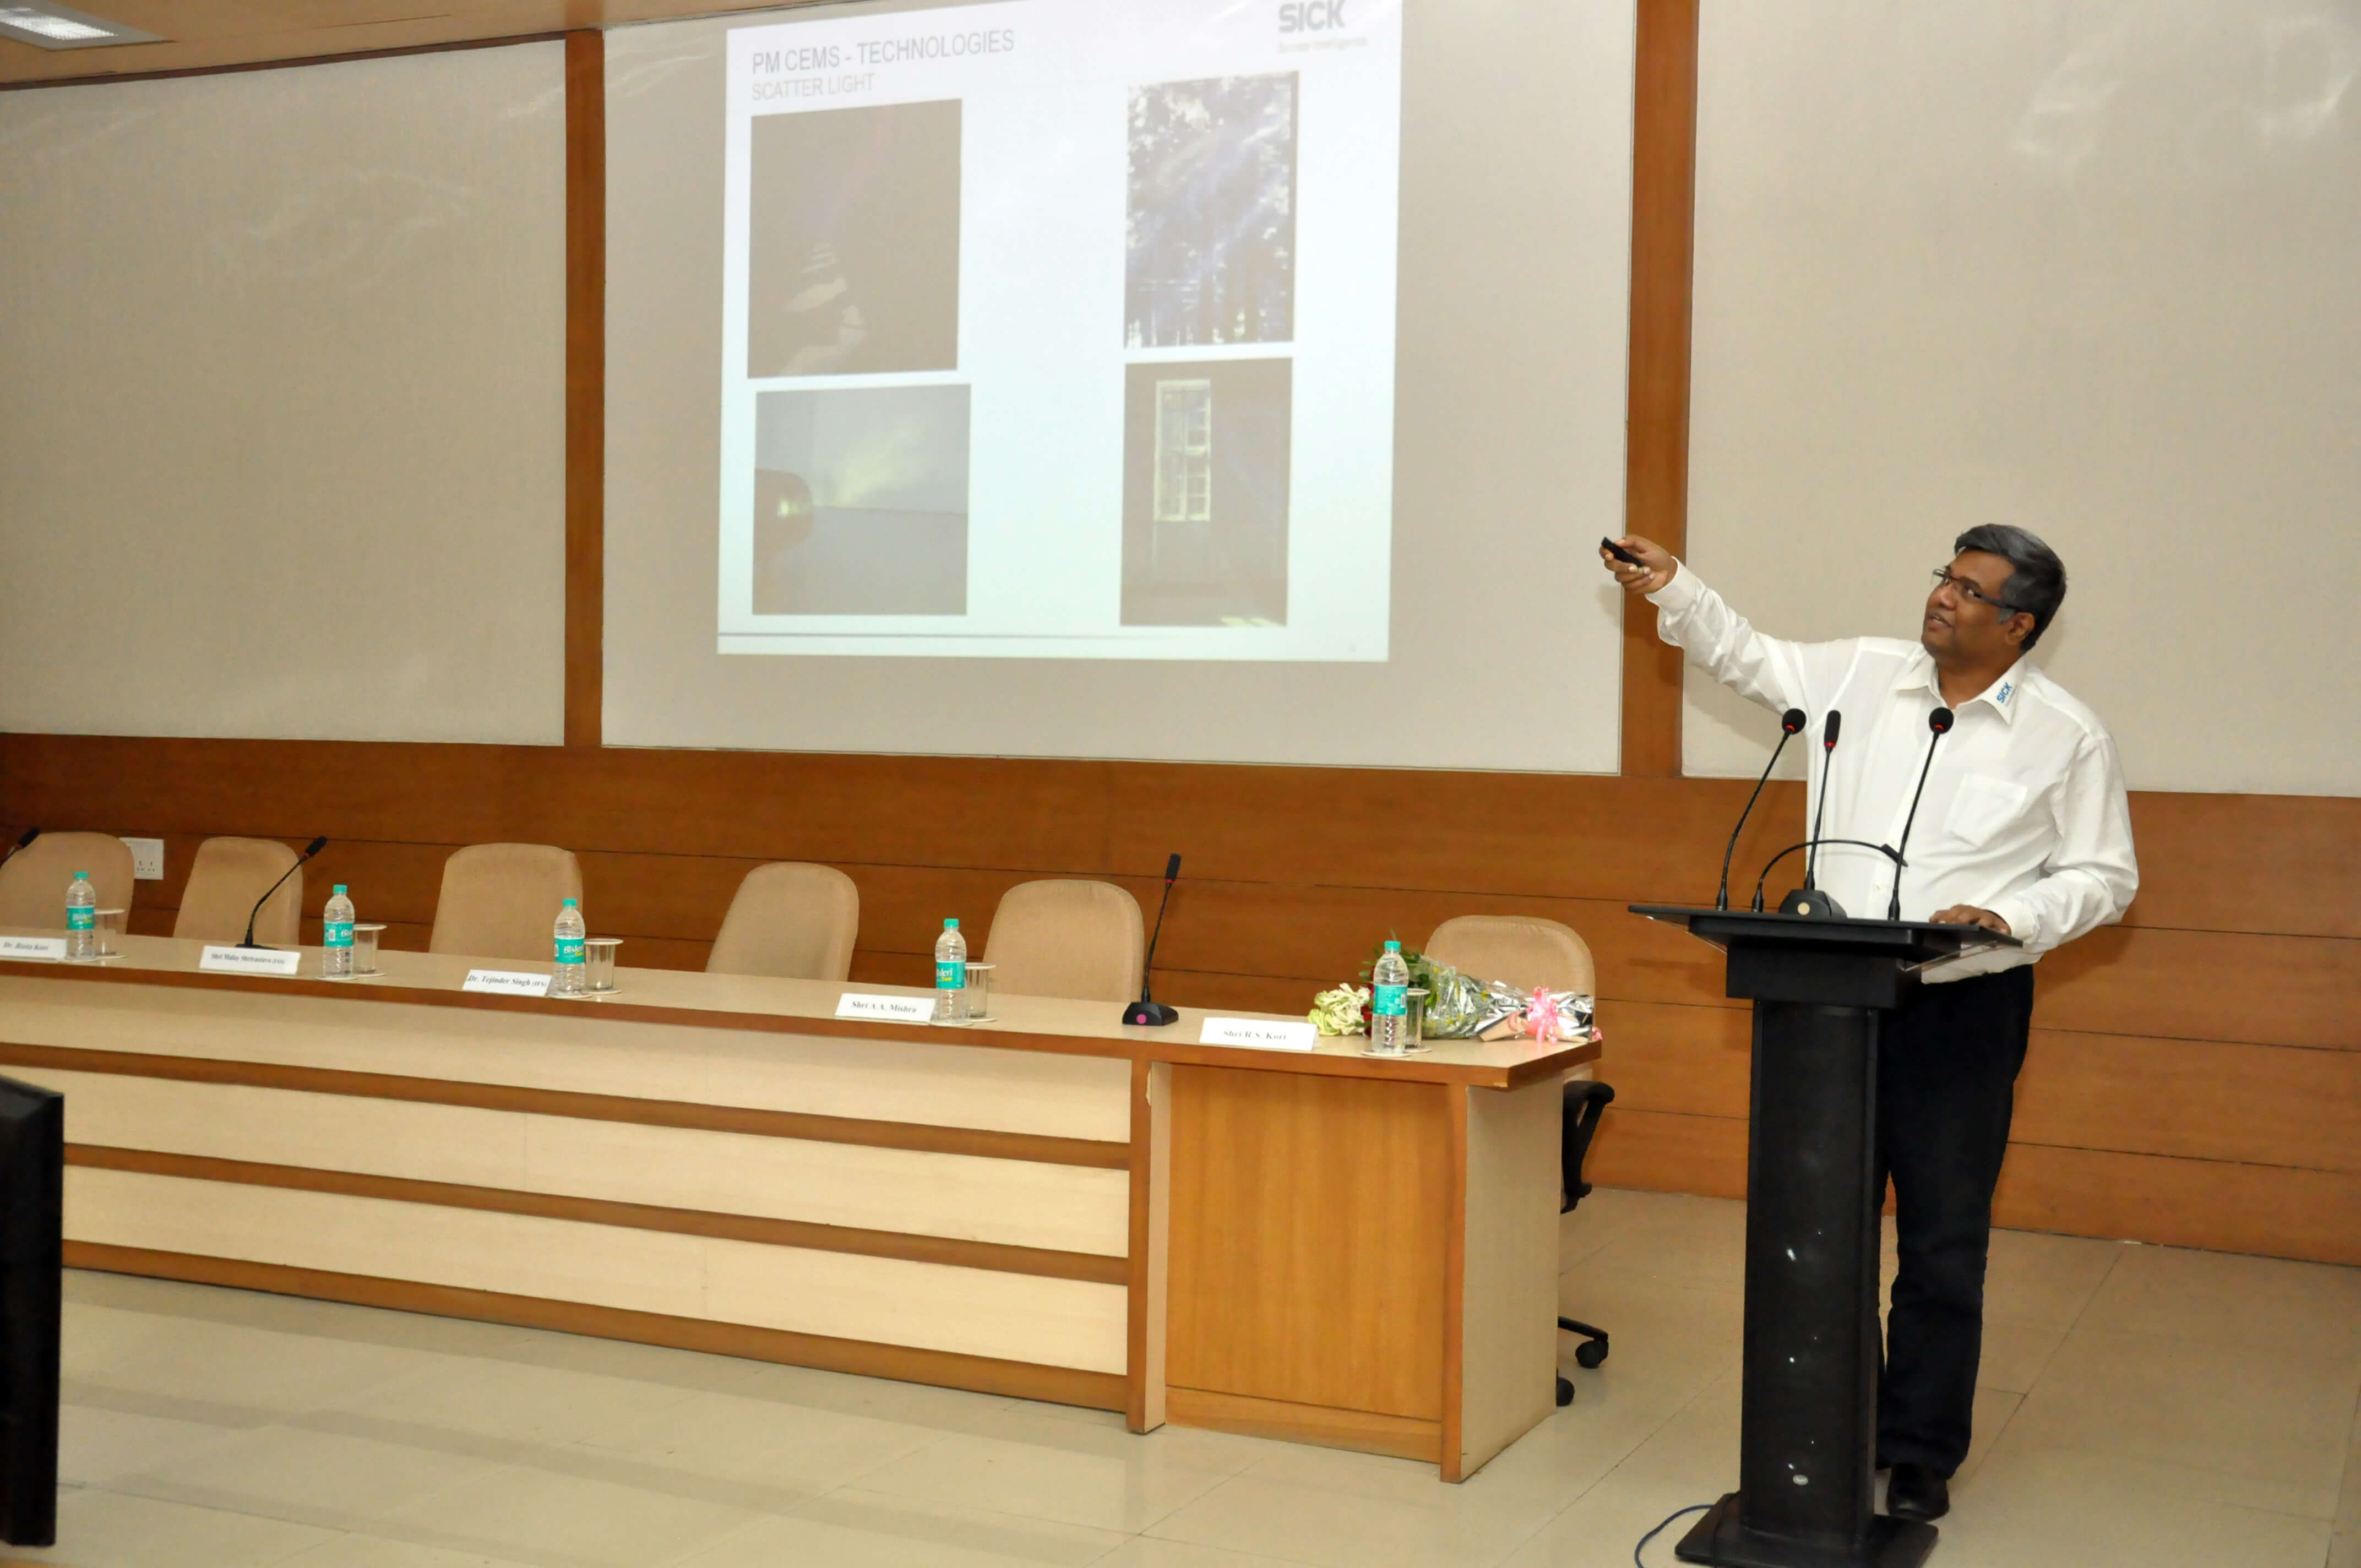 Shri Sankar Kannan, M/s SICK India Pvt. Ltd. talking on PM-CEMS technology